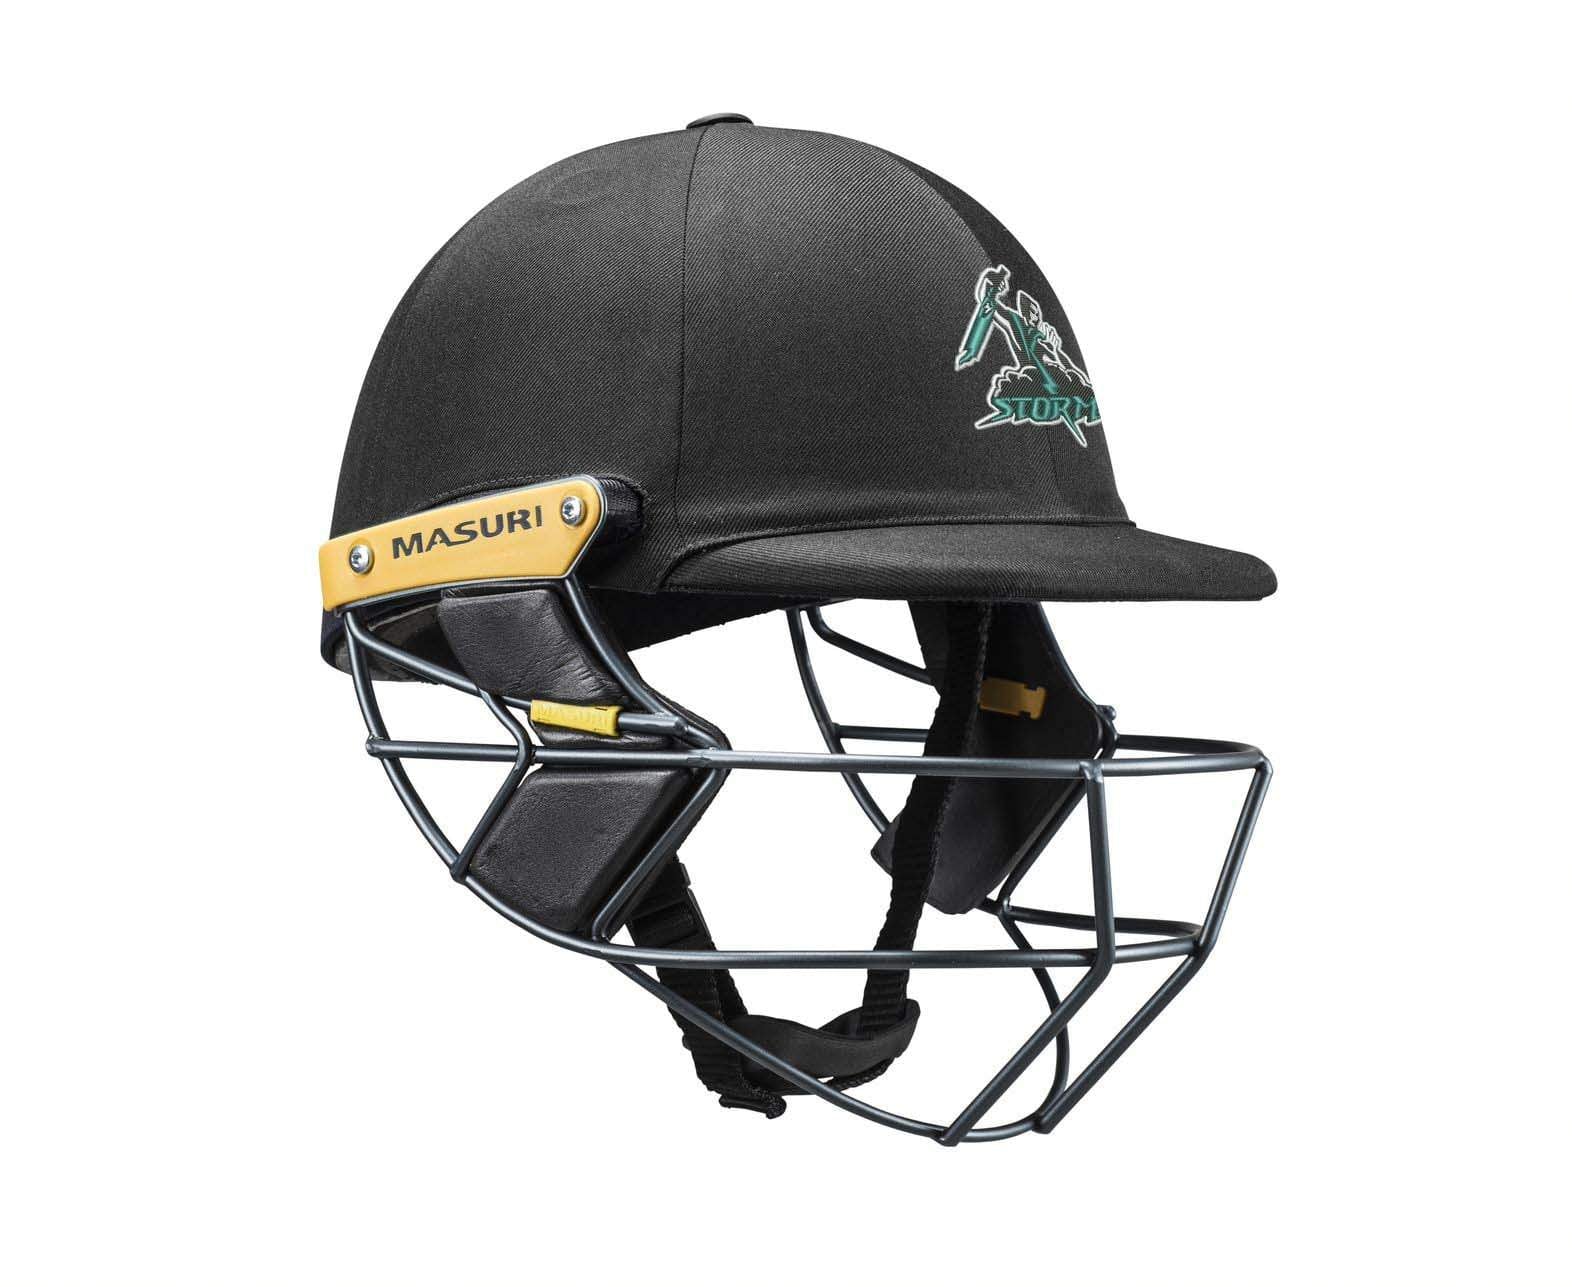 Masuri Club Helmet Sydenham Hillside Cricket Club Helmet